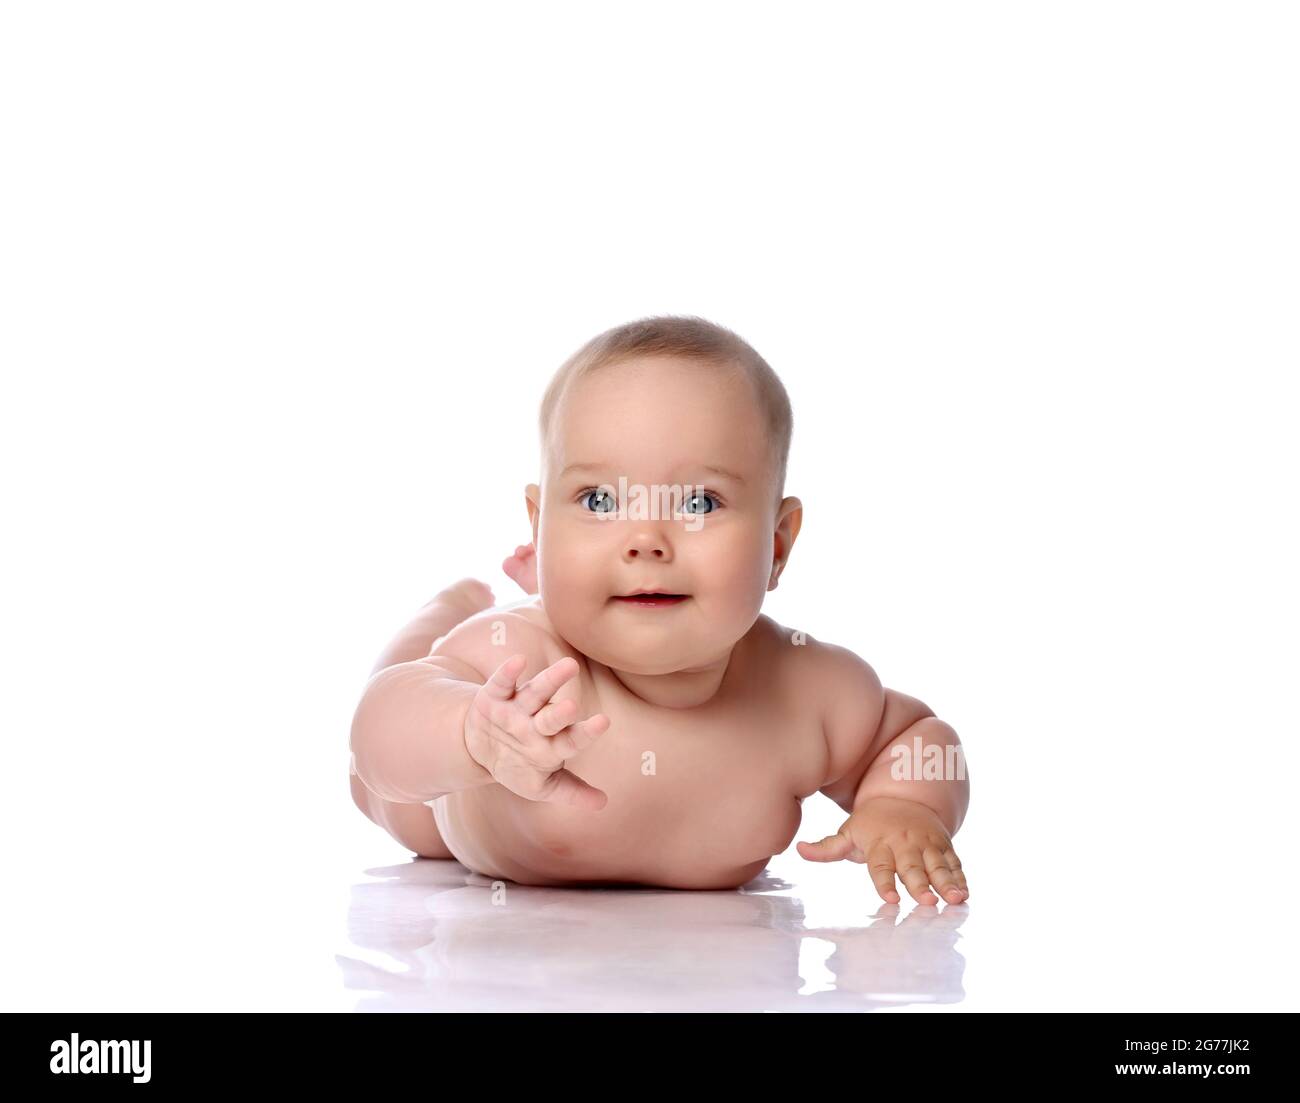 Glücklich neugierig Kleinkind Baby Mädchen Kind in Windel liegt auf ihrem Bauch, Magen versucht zu erreichen, berühren Kamera Stockfoto